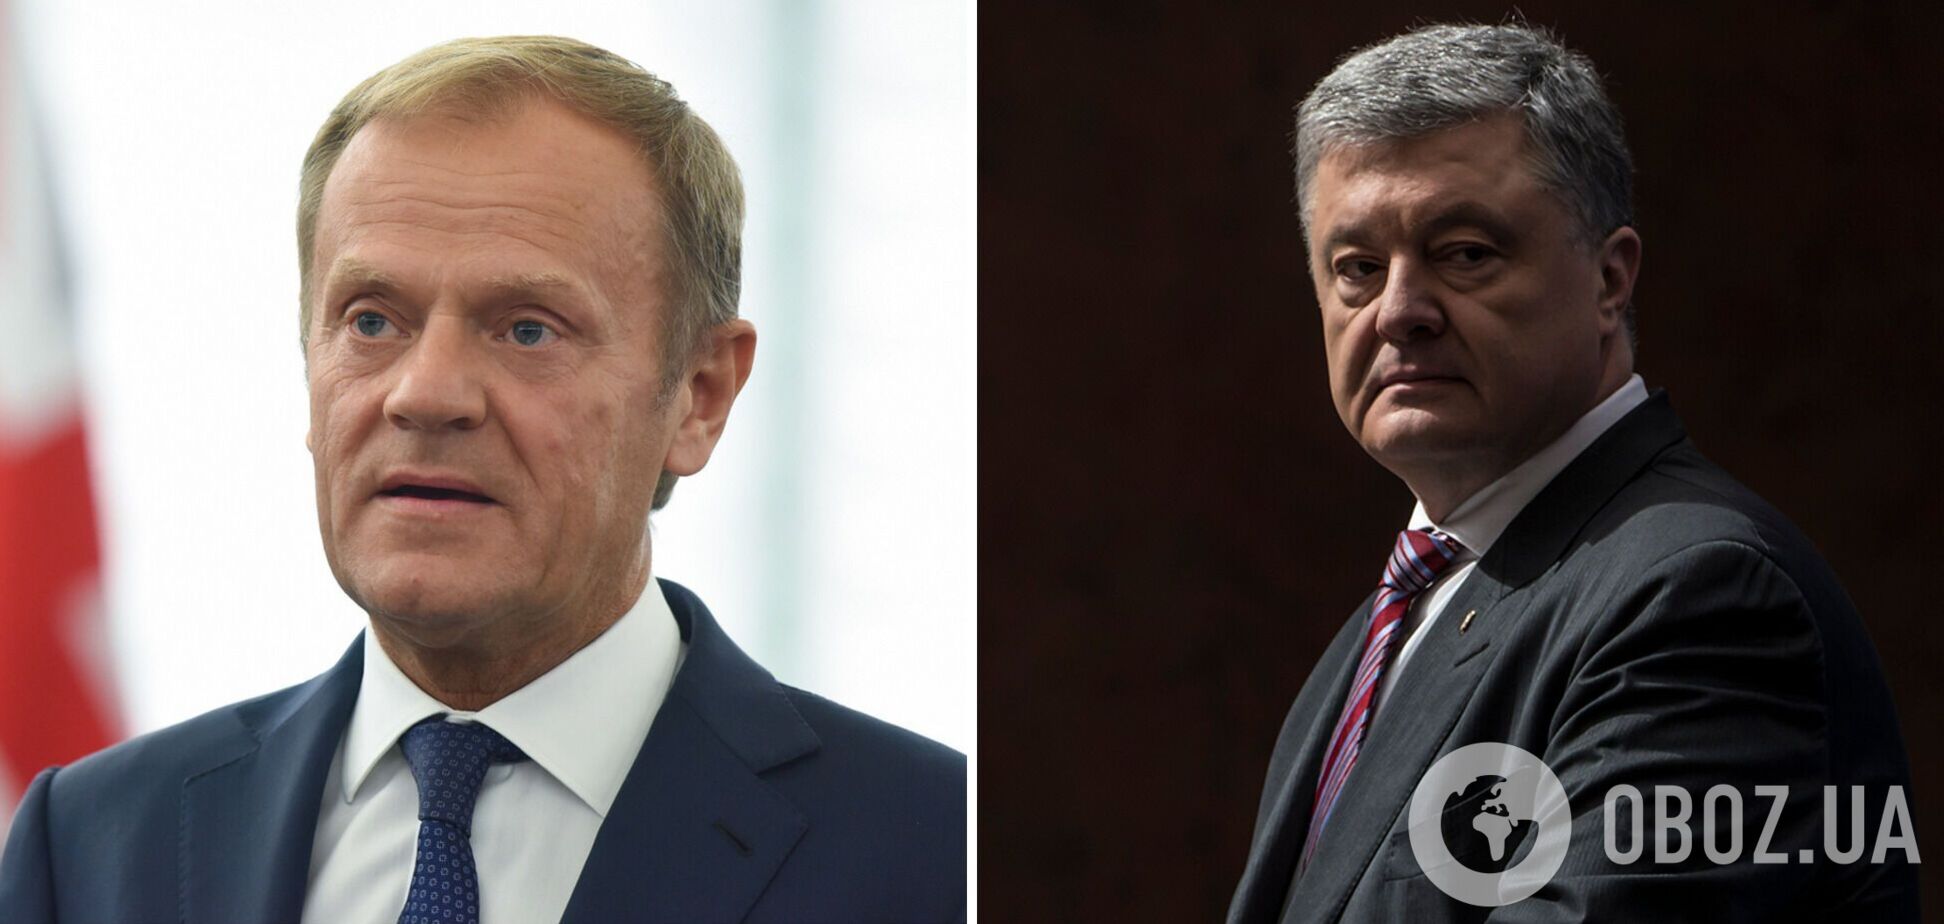 Дональд Туск выразил поддержку Порошенко: он стремится защищать Украину от российской агрессии